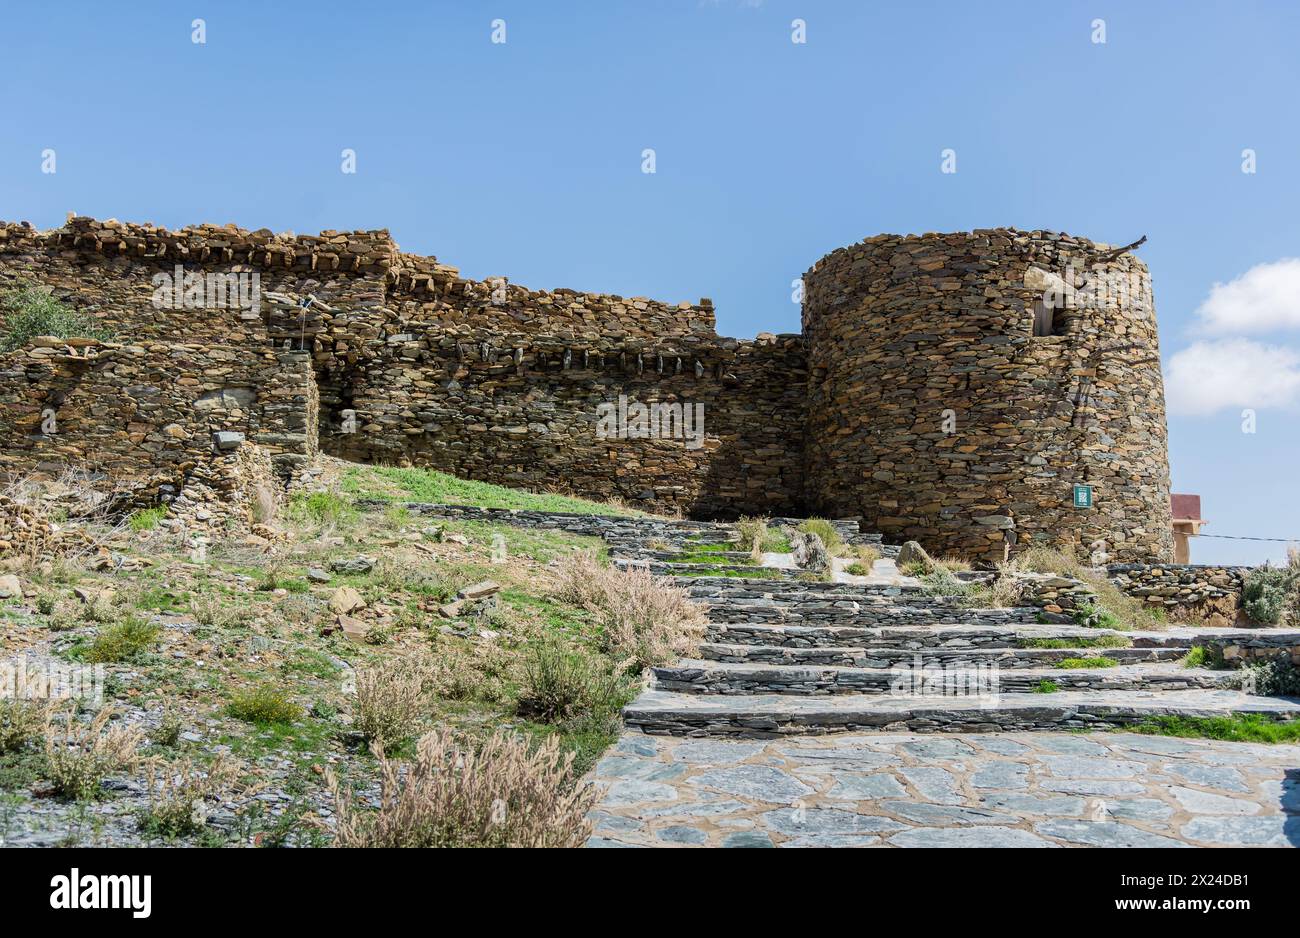 Un ancien château construit en utilisant des pierres dans l'architecture ancienne appelé château de Bakhroush Ben Alas est situé dans la région d'Al Baha en Arabie Saoudite Banque D'Images